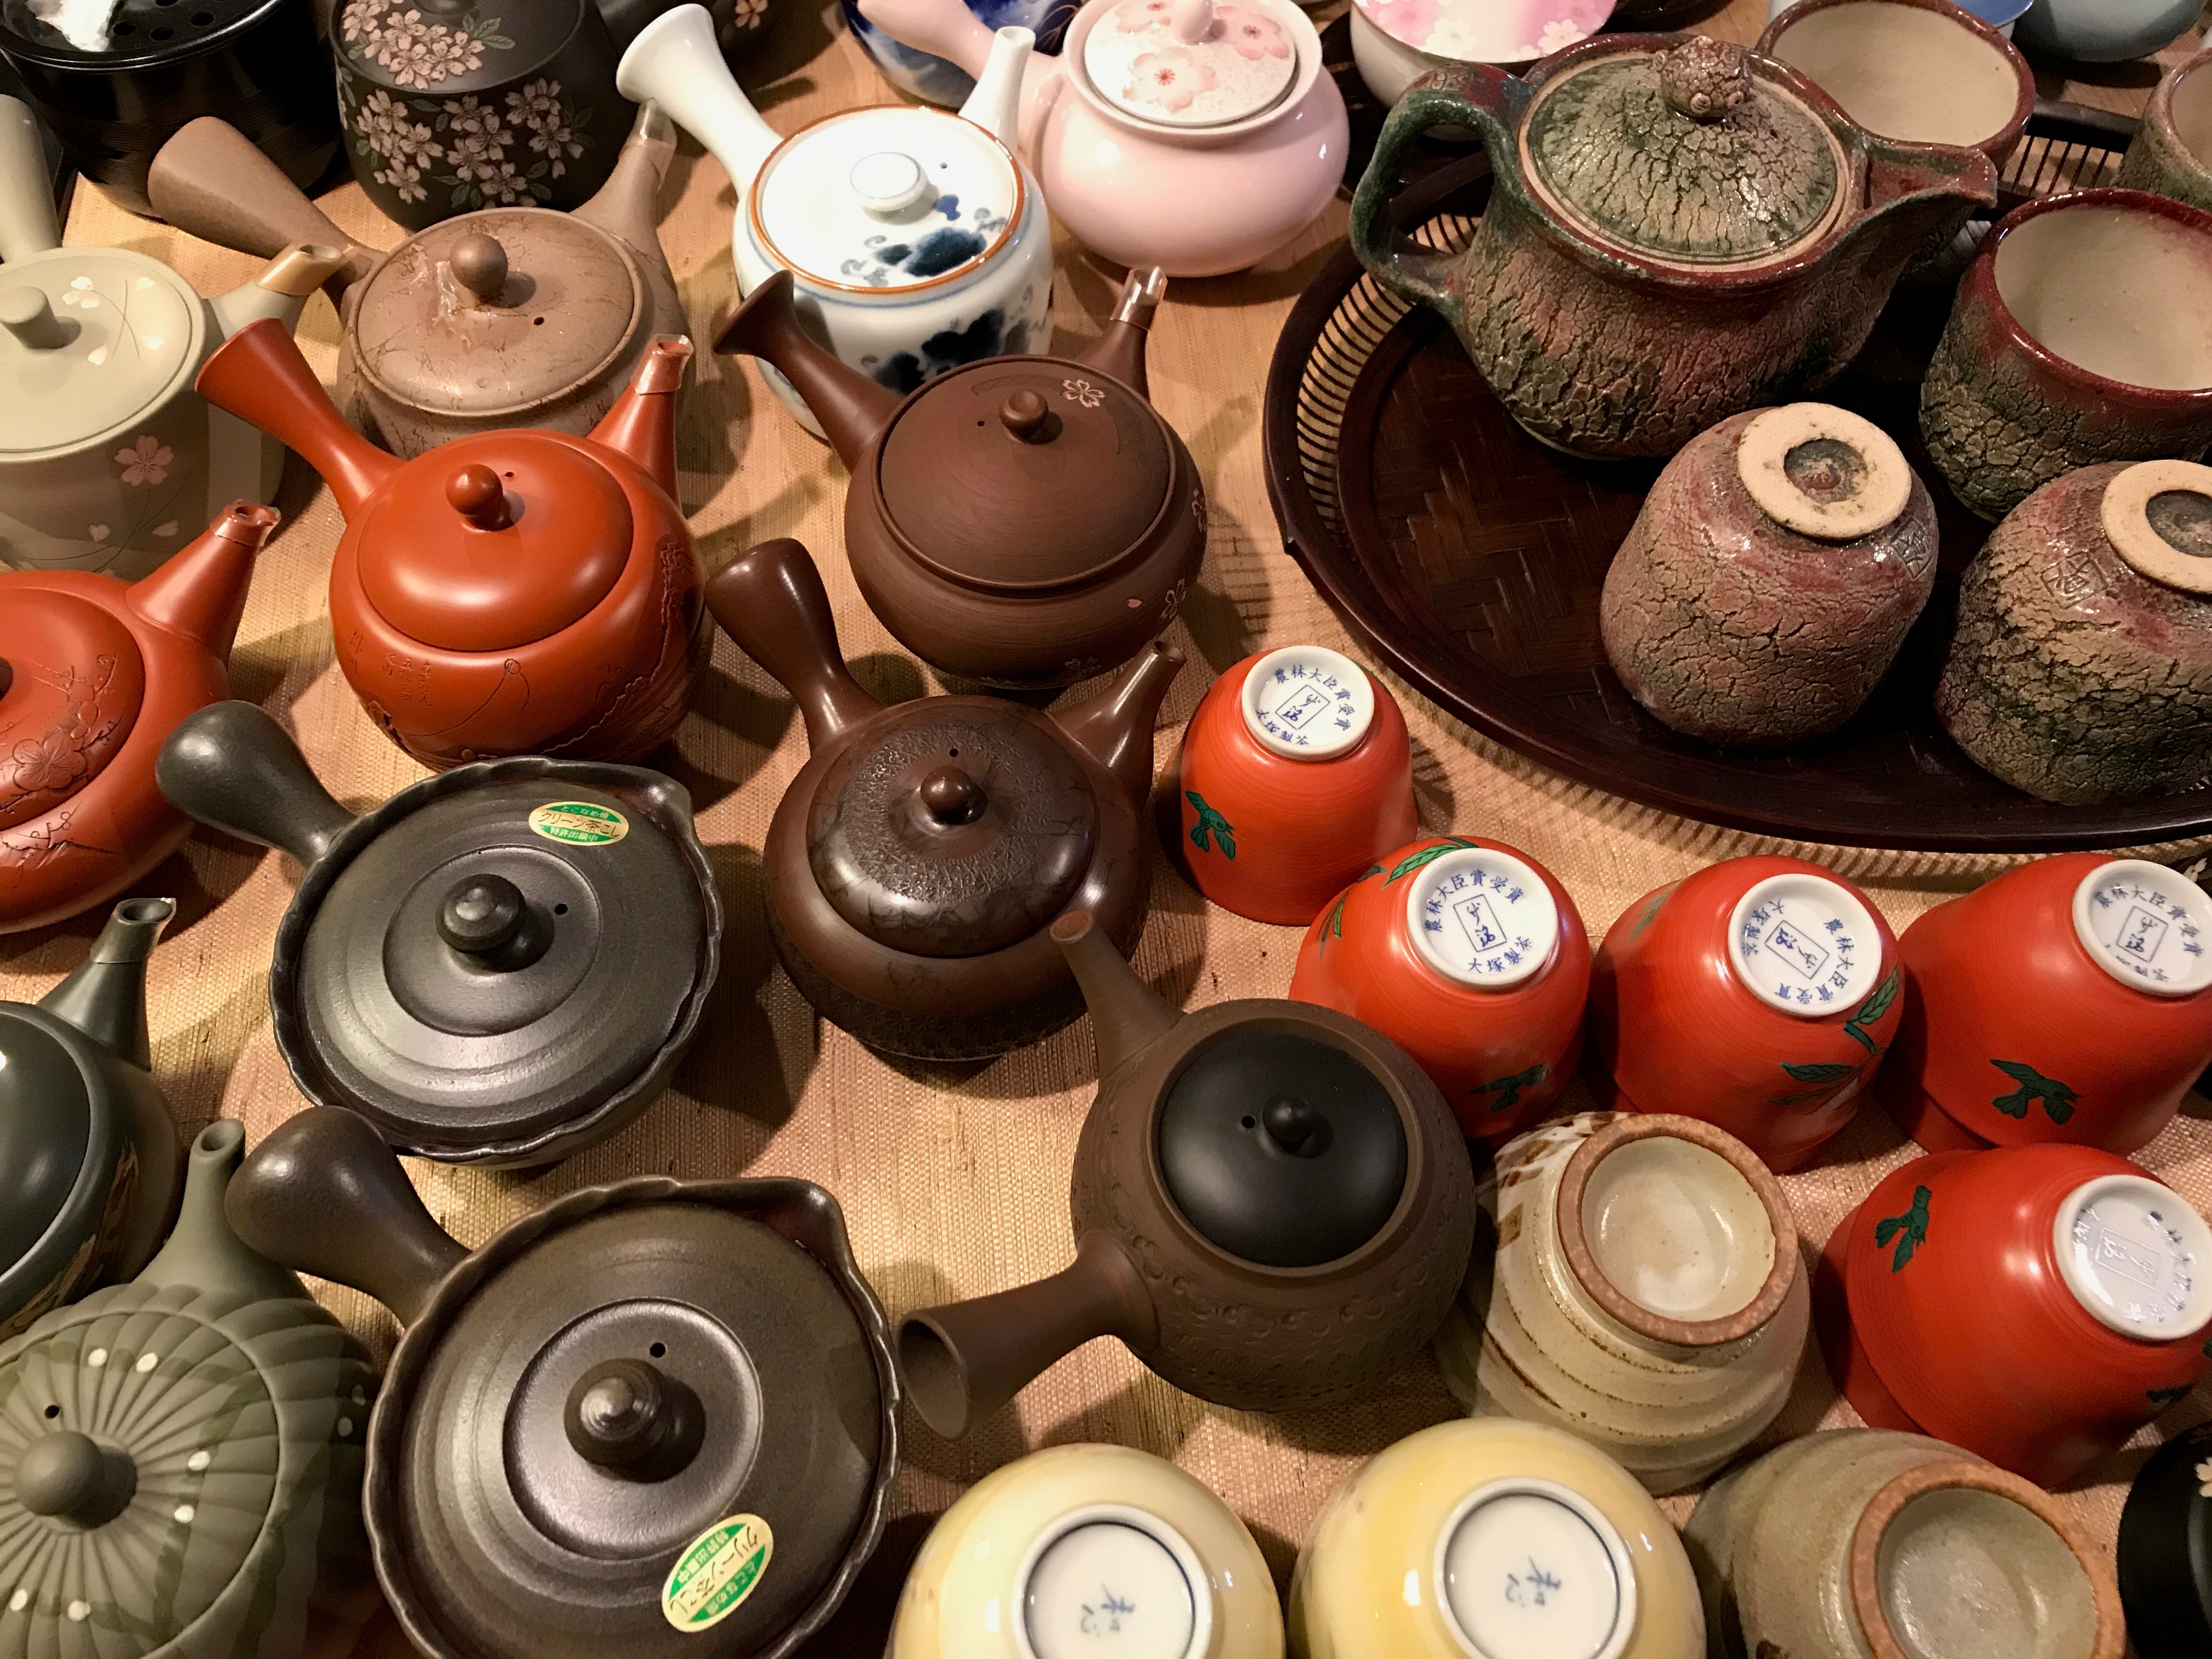 Handmade ceramics and tea accessories